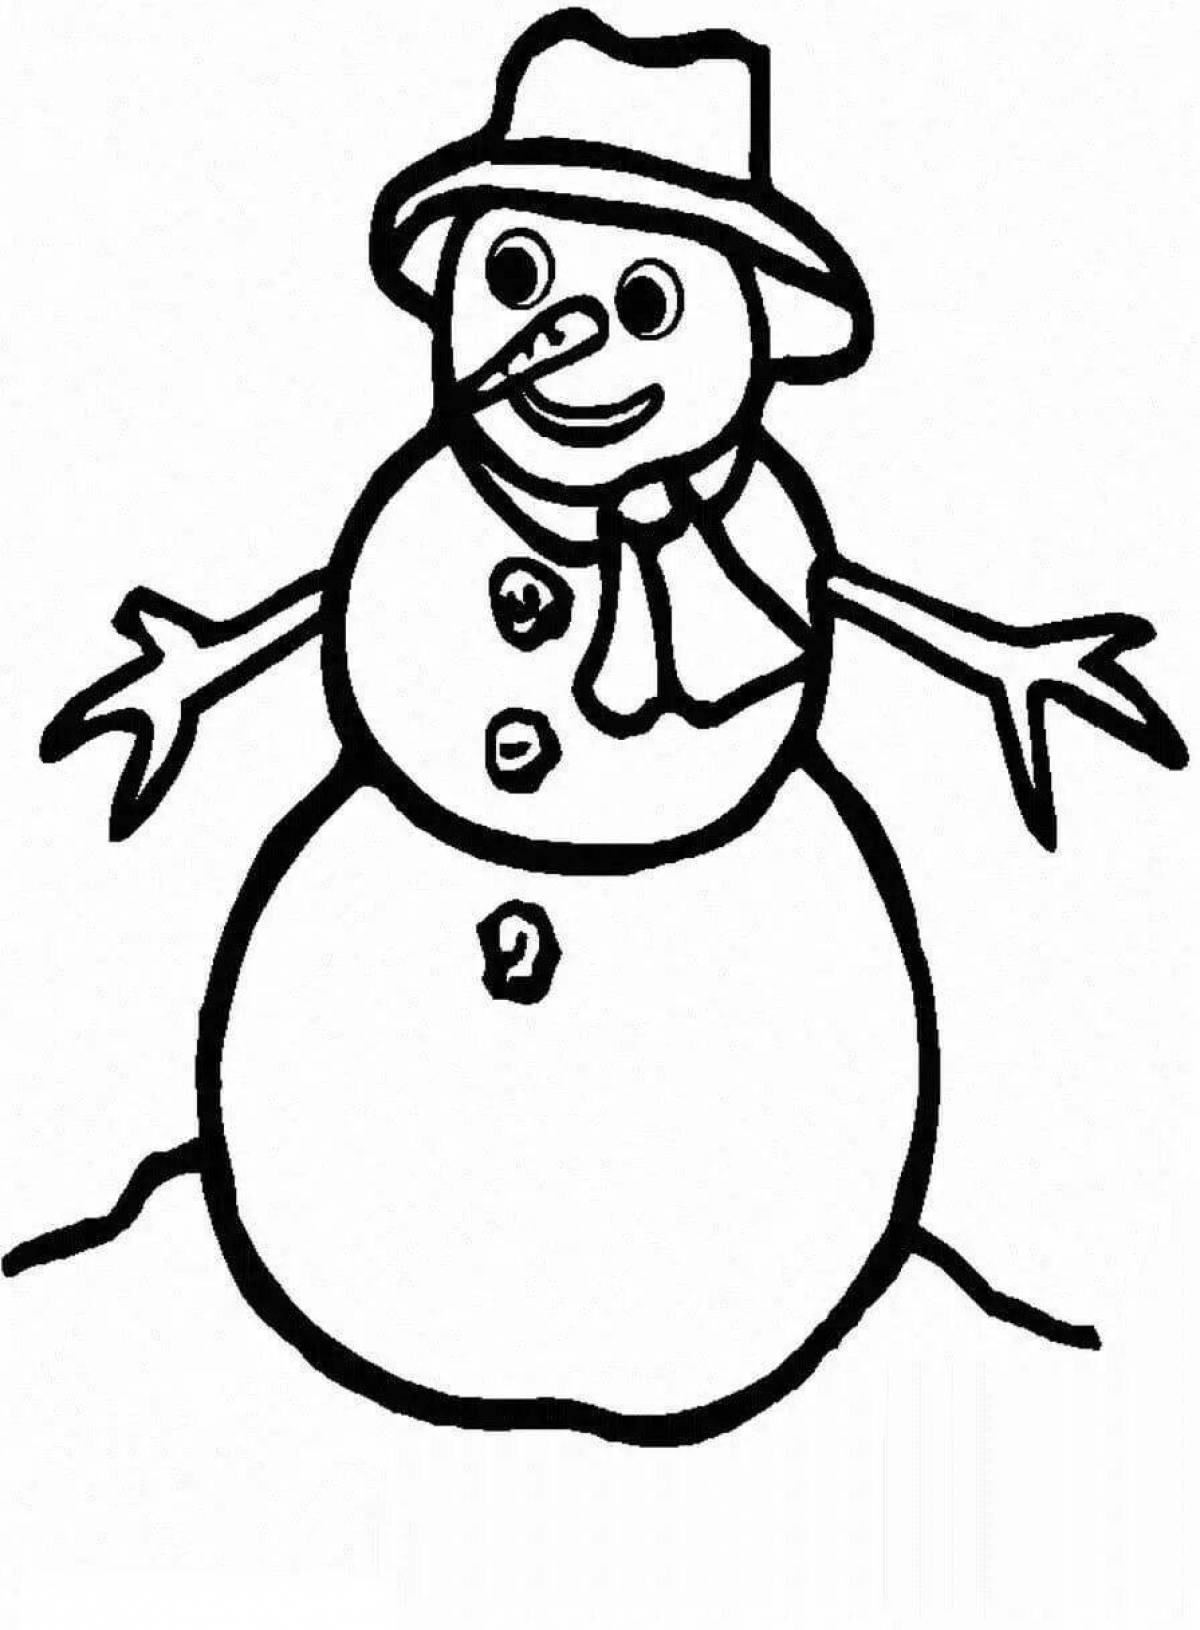 Веселая раскраска снеговик для детей 3-4 лет